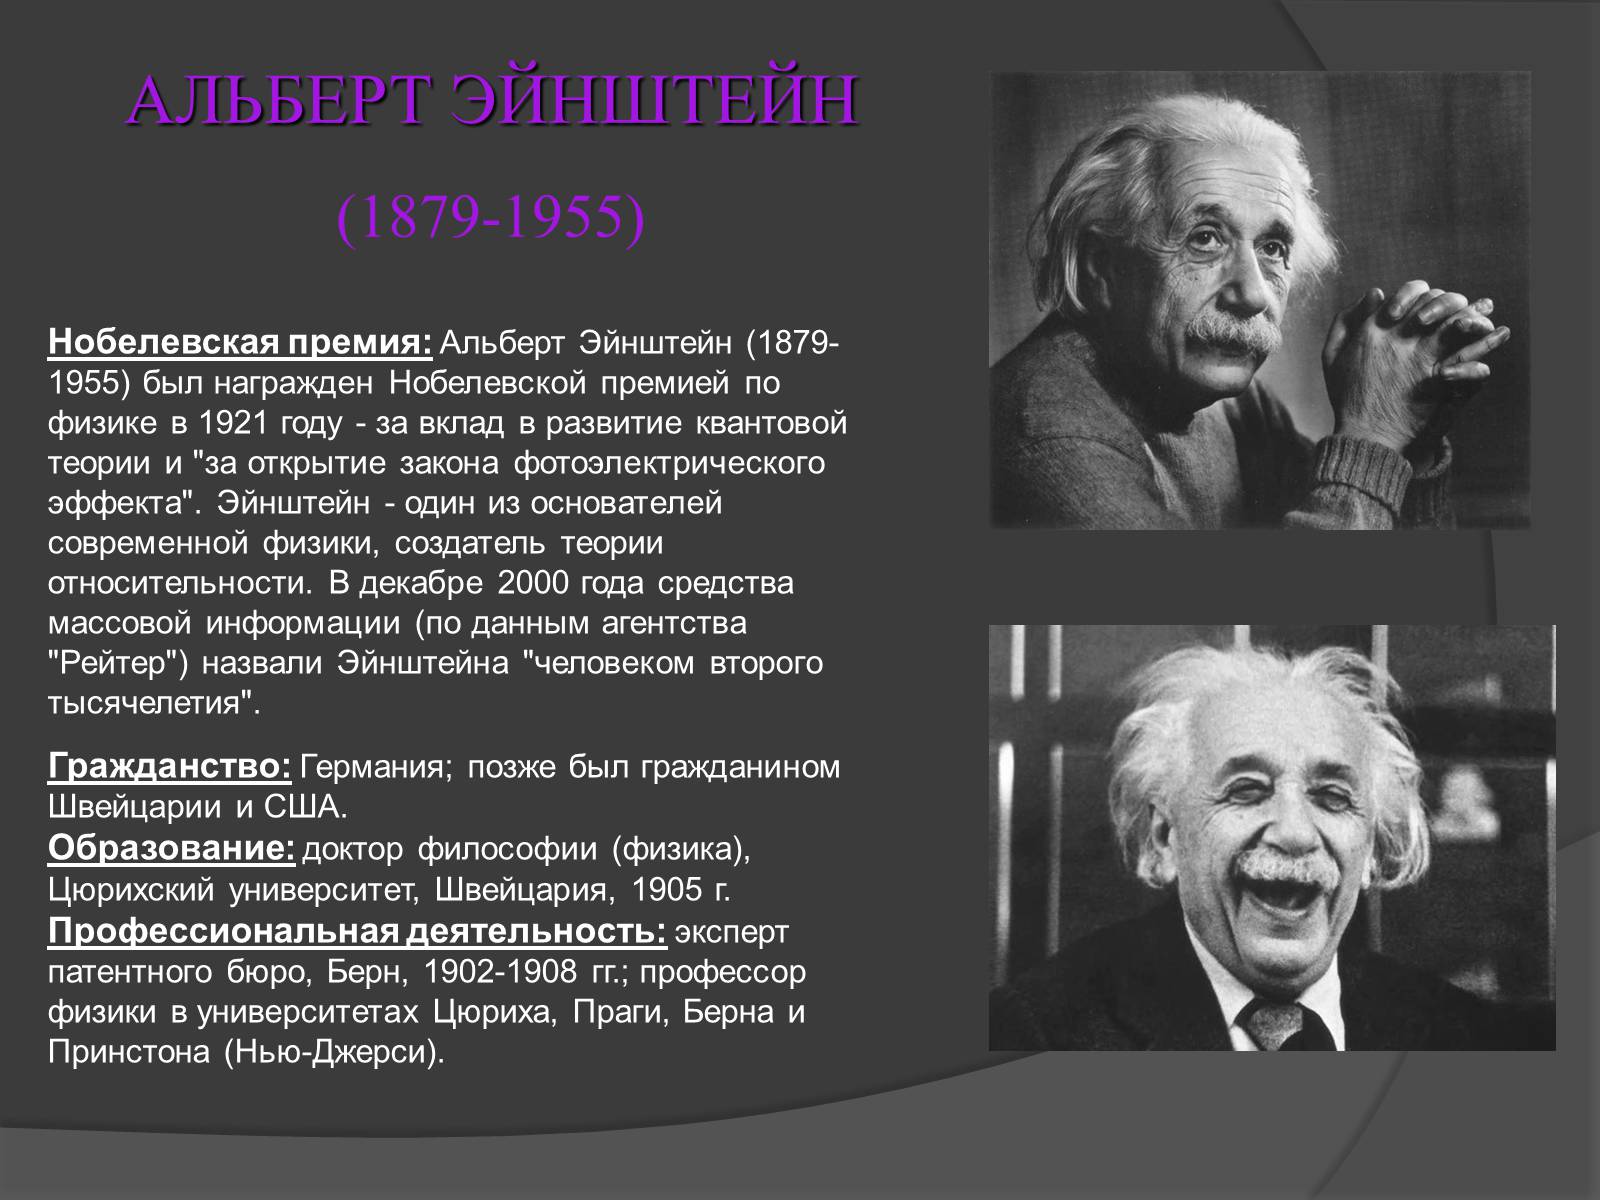 Известные открытия физиков. Эйнштейн получил Нобелевскую премию по физике в 1921 году.